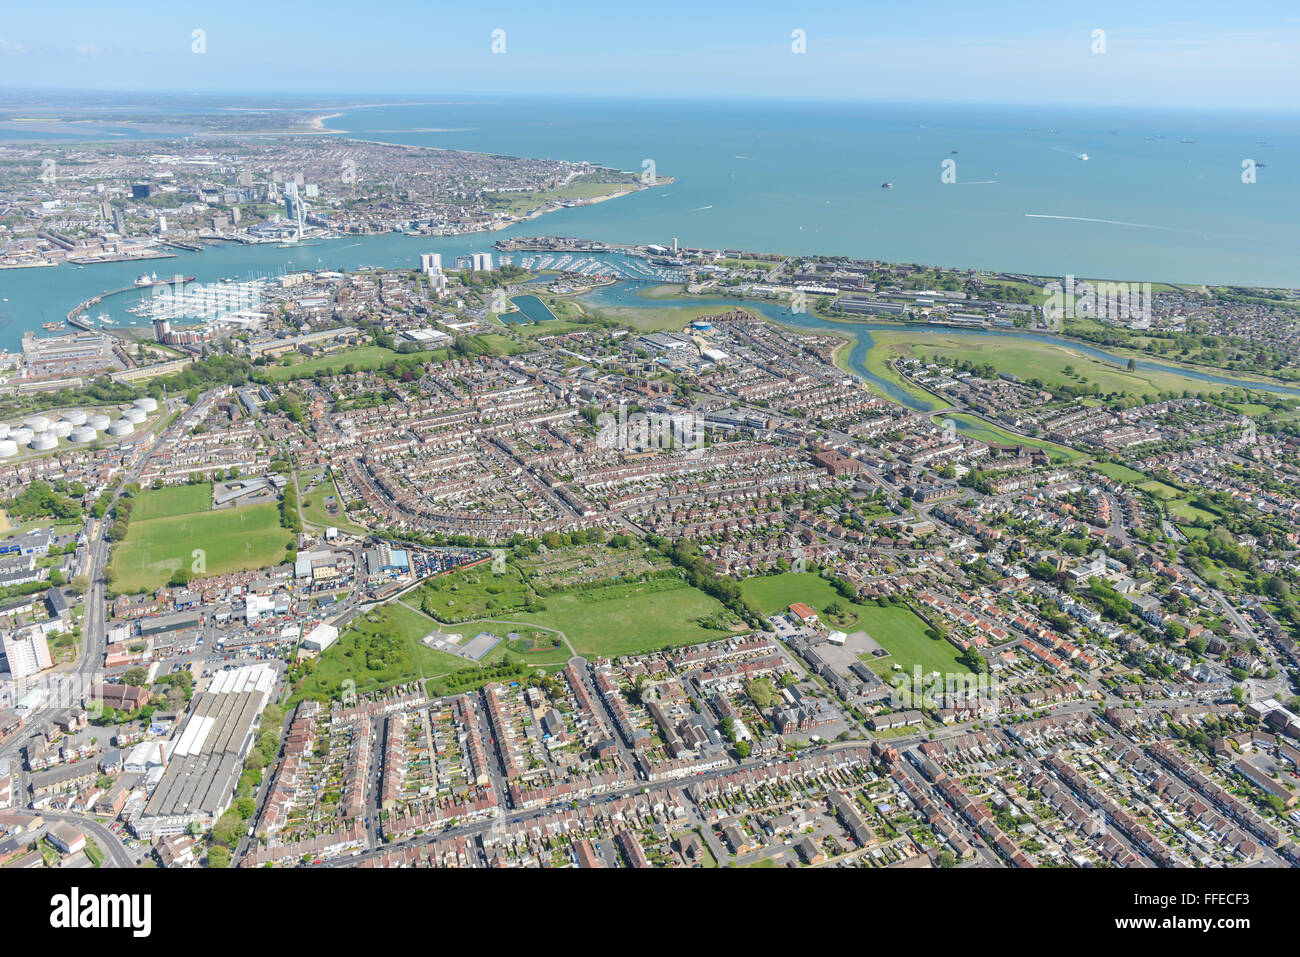 Une vue aérienne de la ville côtière de Hampshire Gosport. Portsmouth est visible dans l'arrière-plan Banque D'Images